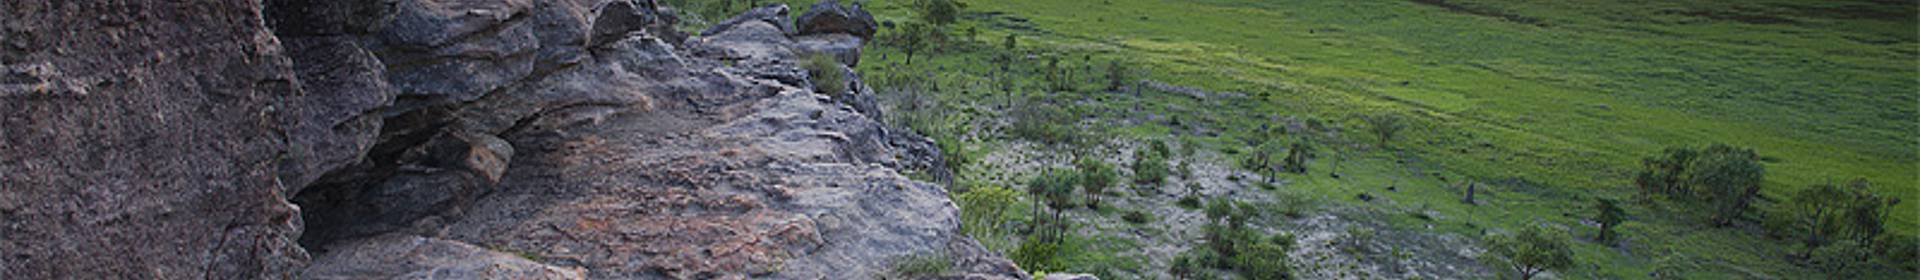 Parc national de Kakadu